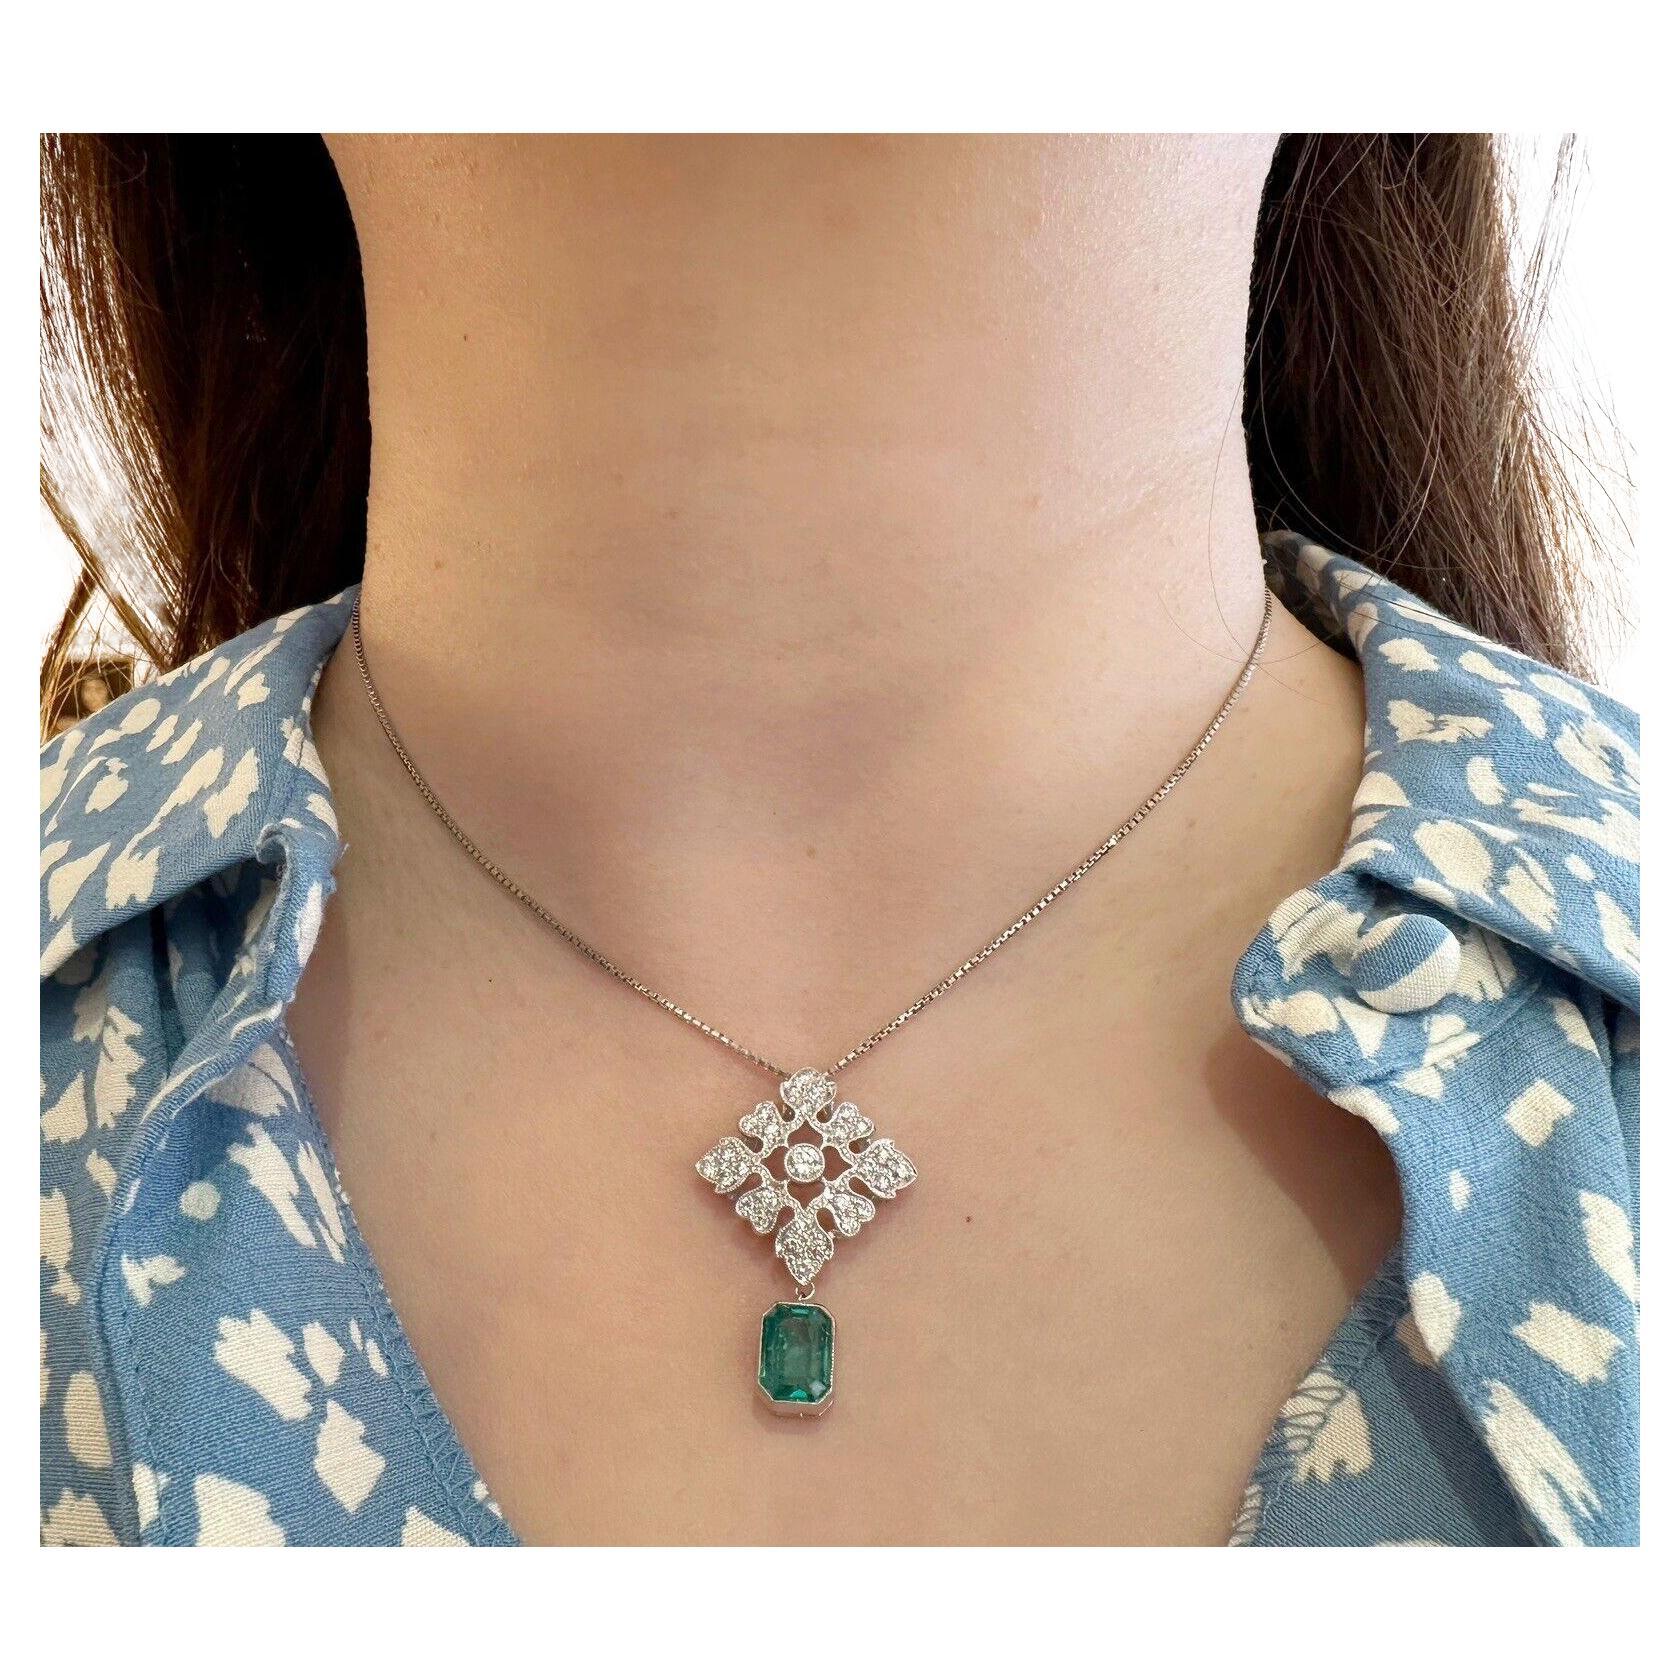 Diamant- und Smaragd-Anhänger-Halskette aus Platin

Smaragd- und Diamant-Halskette mit einem natürlichen Smaragd von 2,04 Karat im Smaragdschliff, gefasst in Platin, an einem Diamantmedaillon mit 0,76 Karat runden Brillanten, gefasst in Platin, an